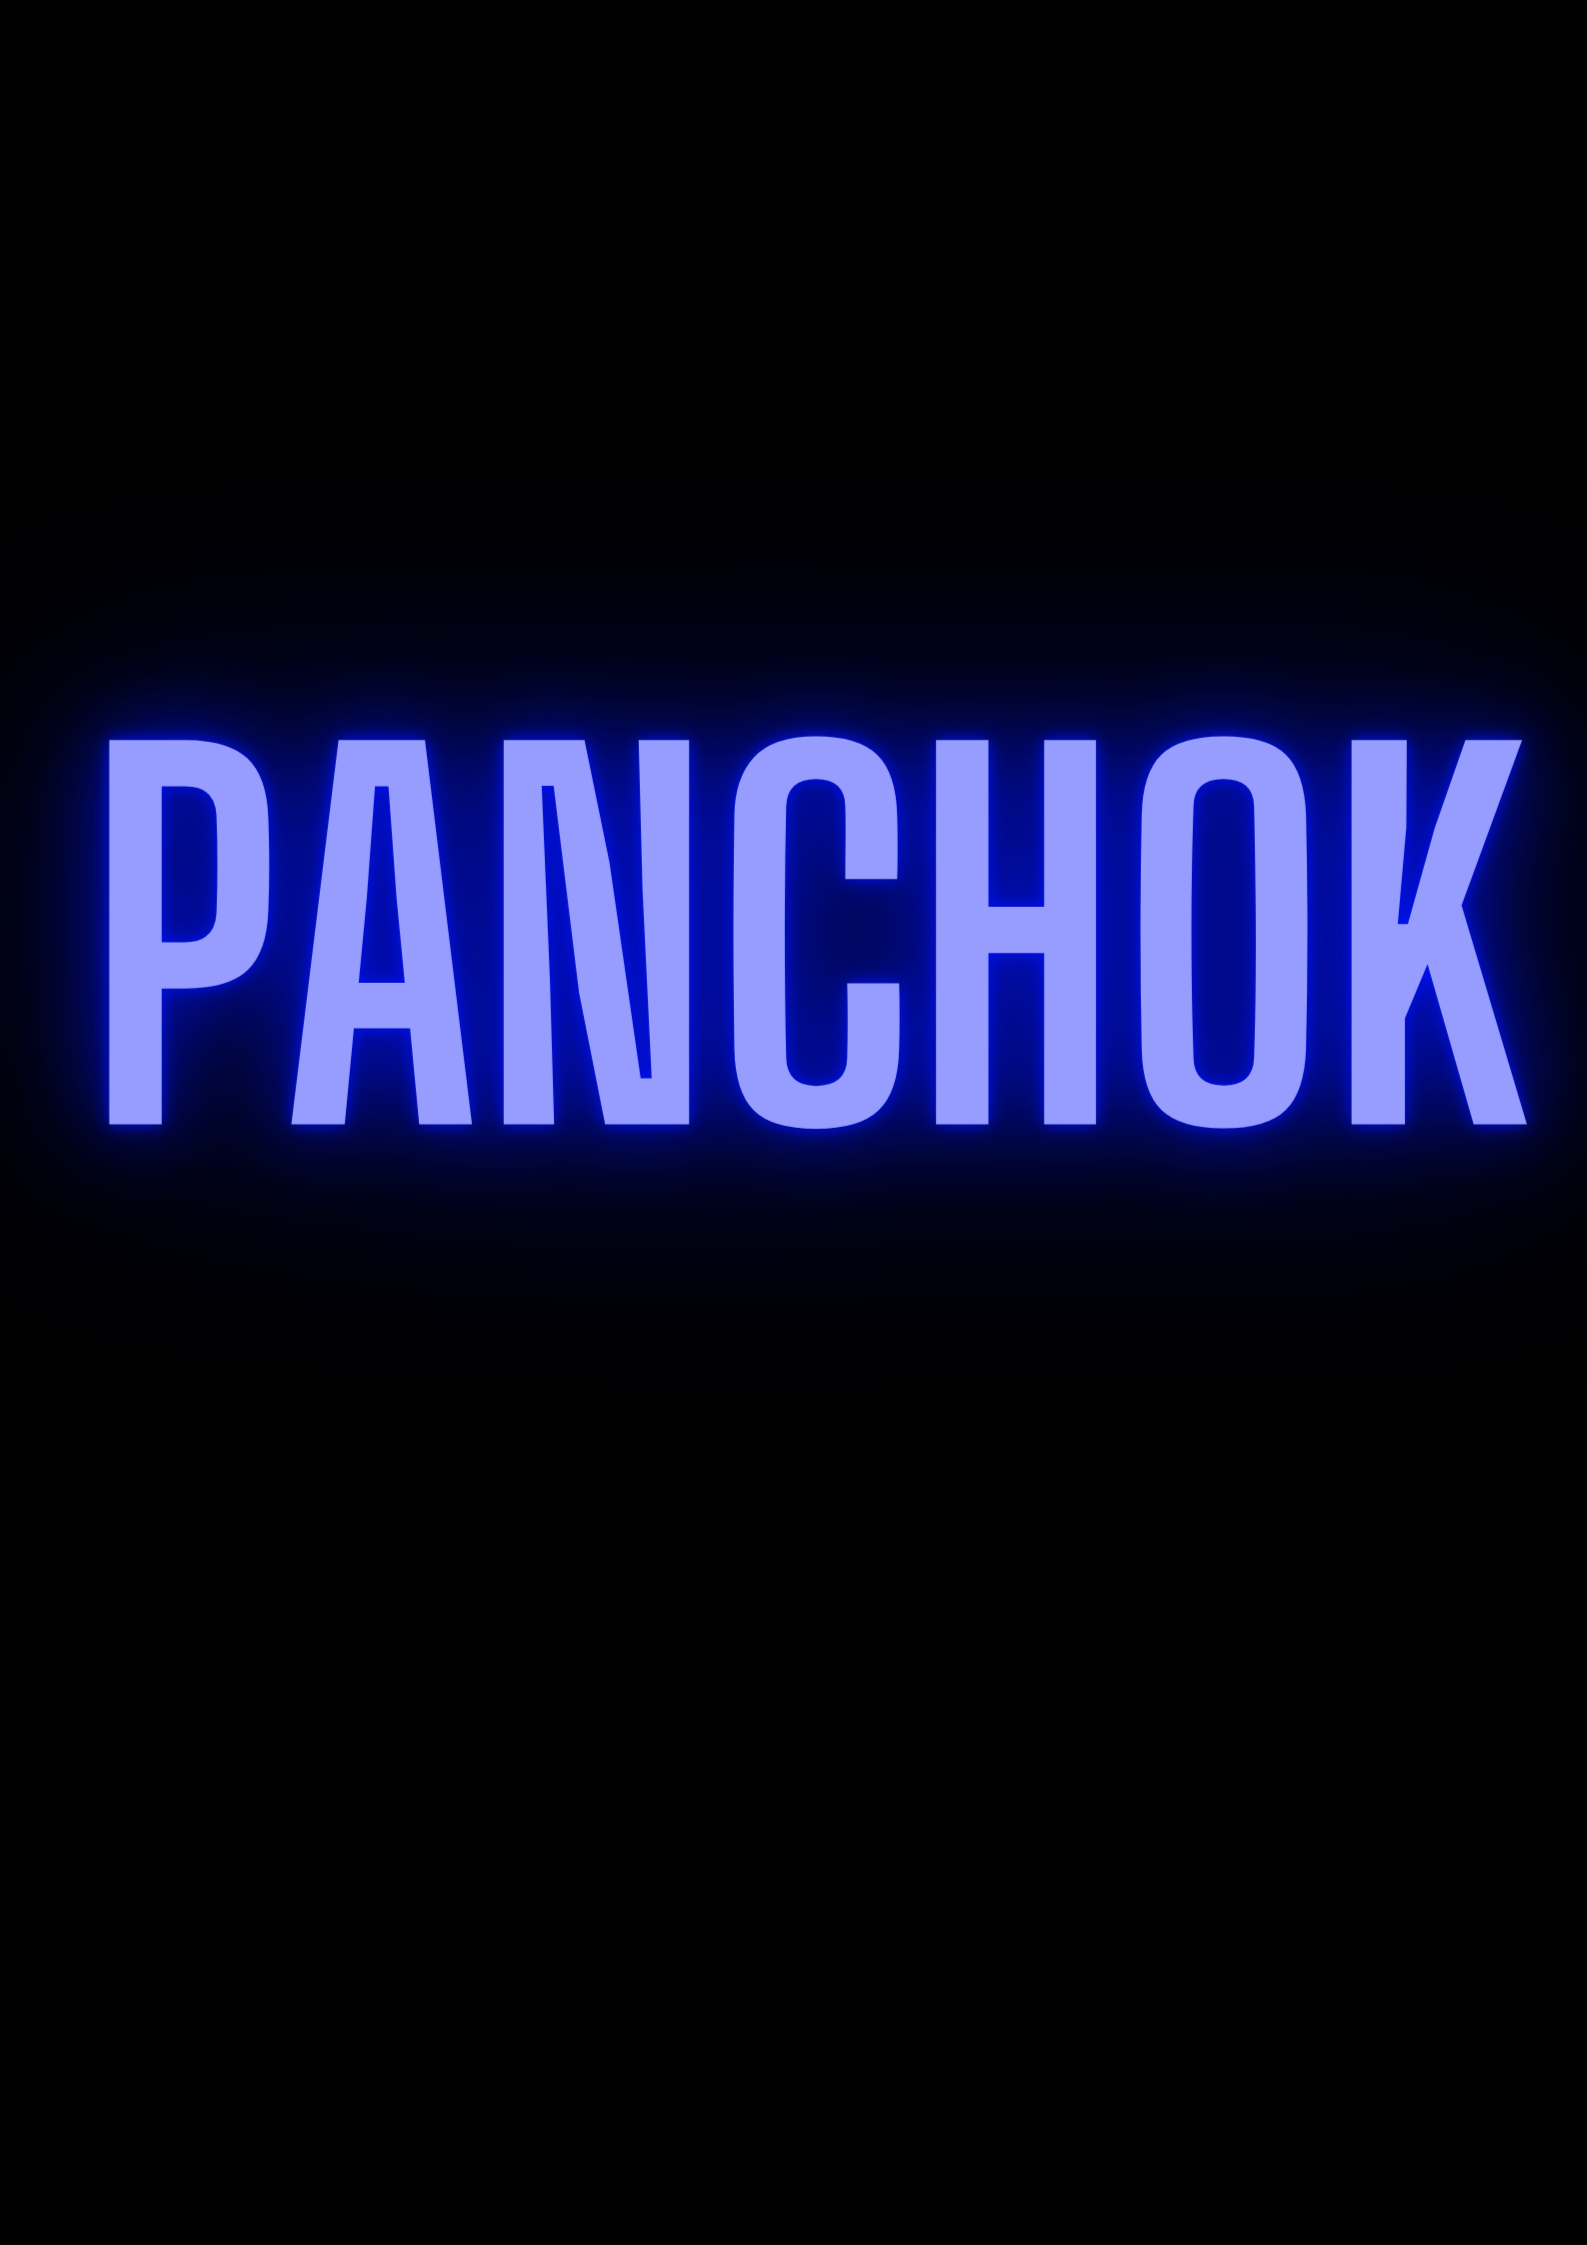 PanchOK